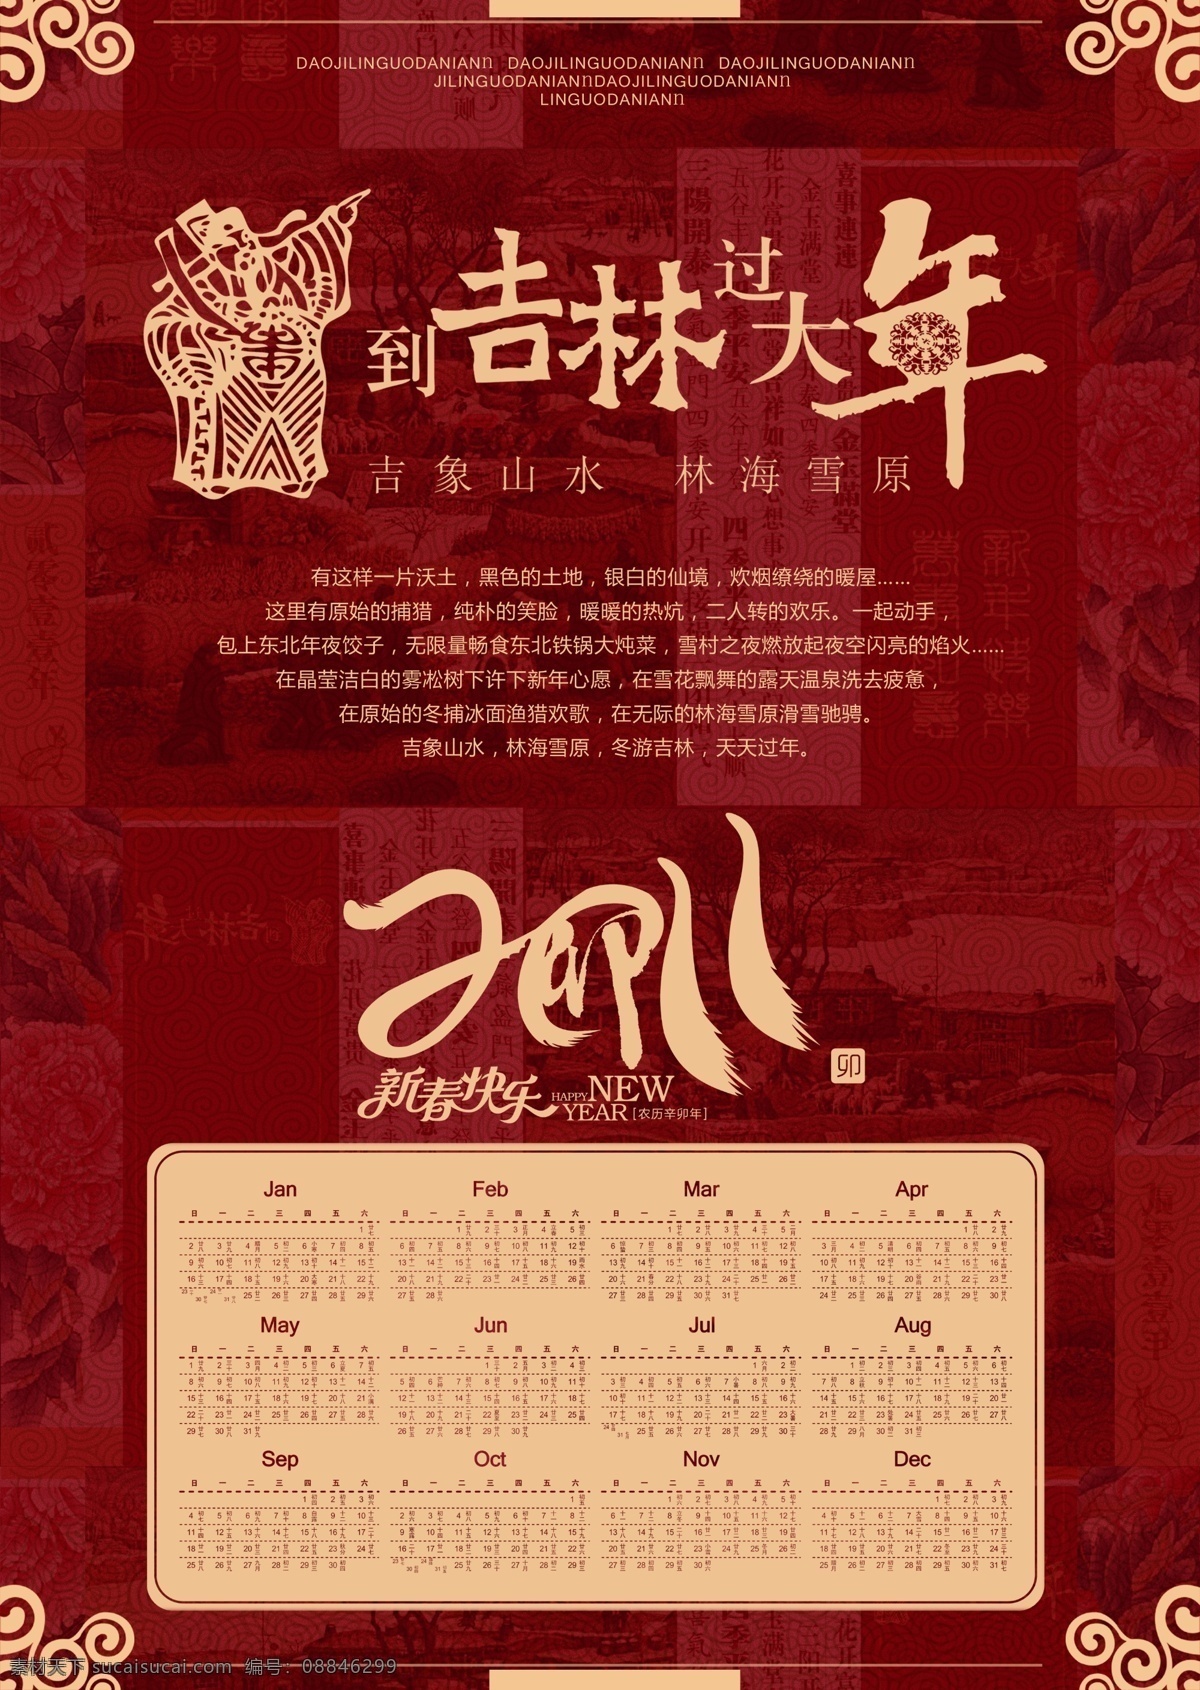 财神 大气 广告设计模板 过年 红色 花纹 黄色 吉林 大年 海报 日历 2011年 年画 简洁 源文件 其他海报设计